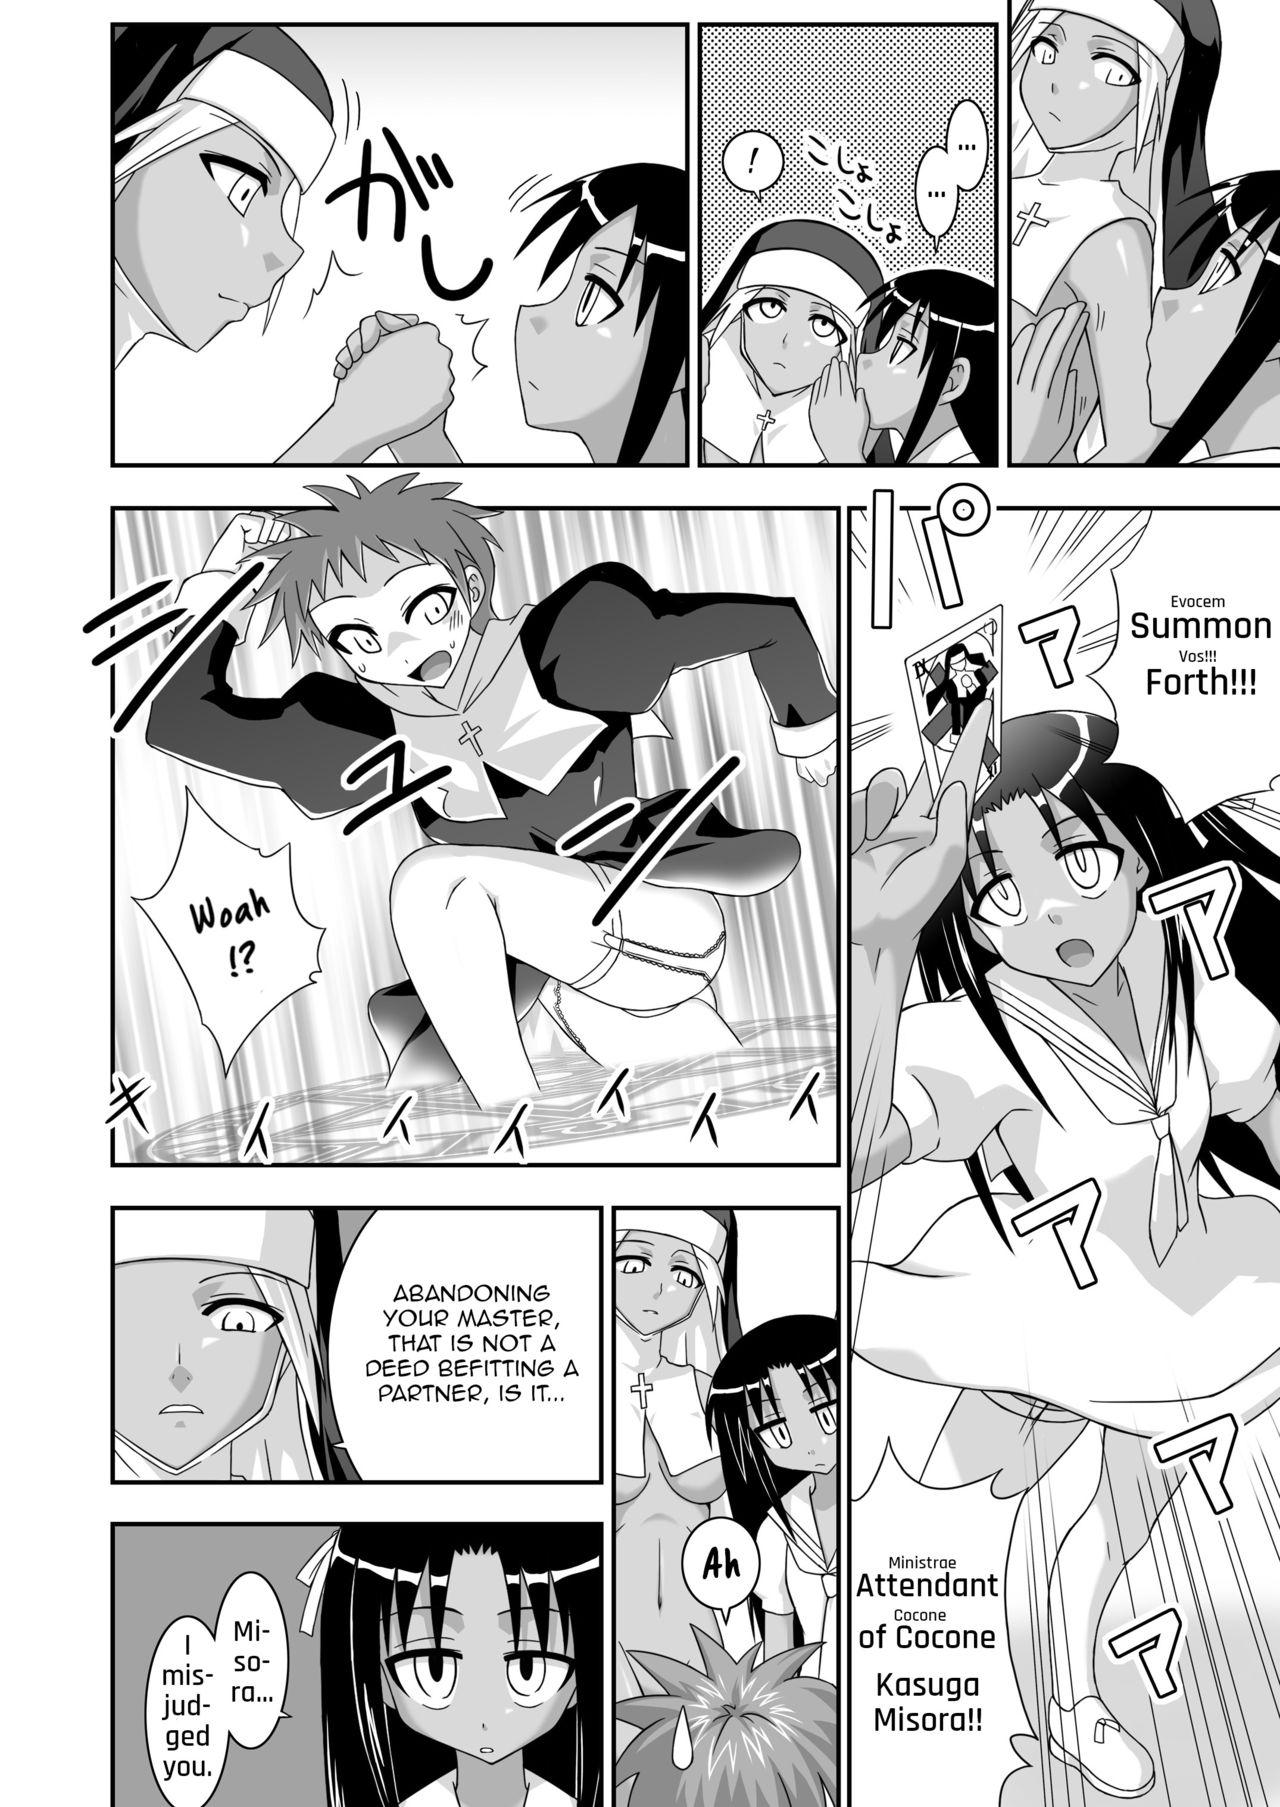 Boys Ura Mahou Sensei Jamma! 12 - Mahou sensei negima Doctor - Page 11